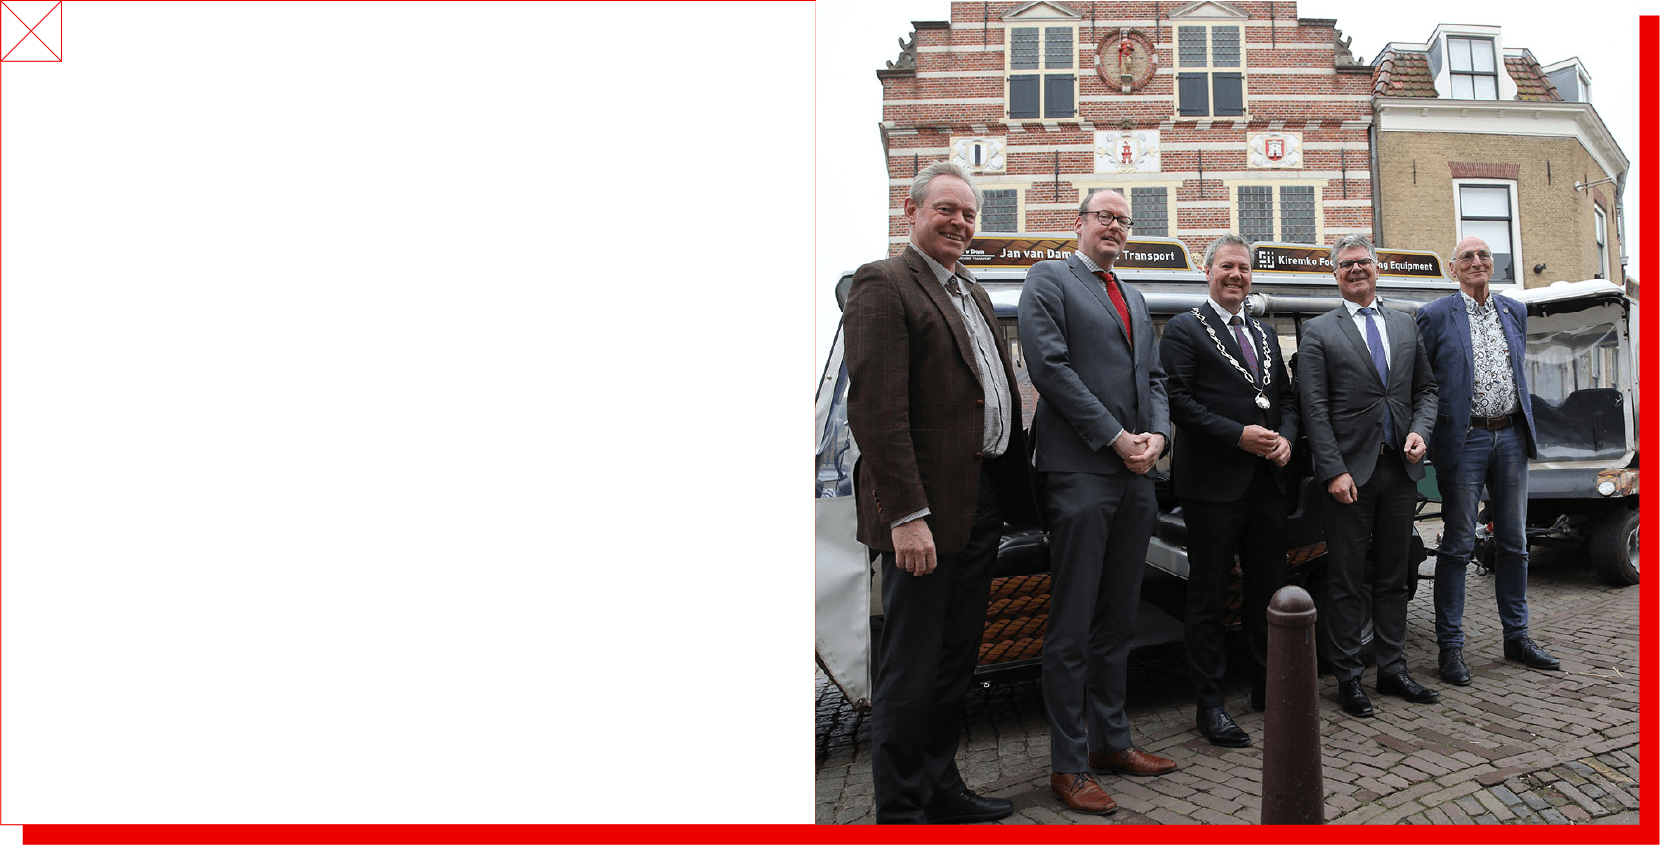 Groepsfoto van de commissaris met onder andere de burgemeester van Oudewater in het historische centrum